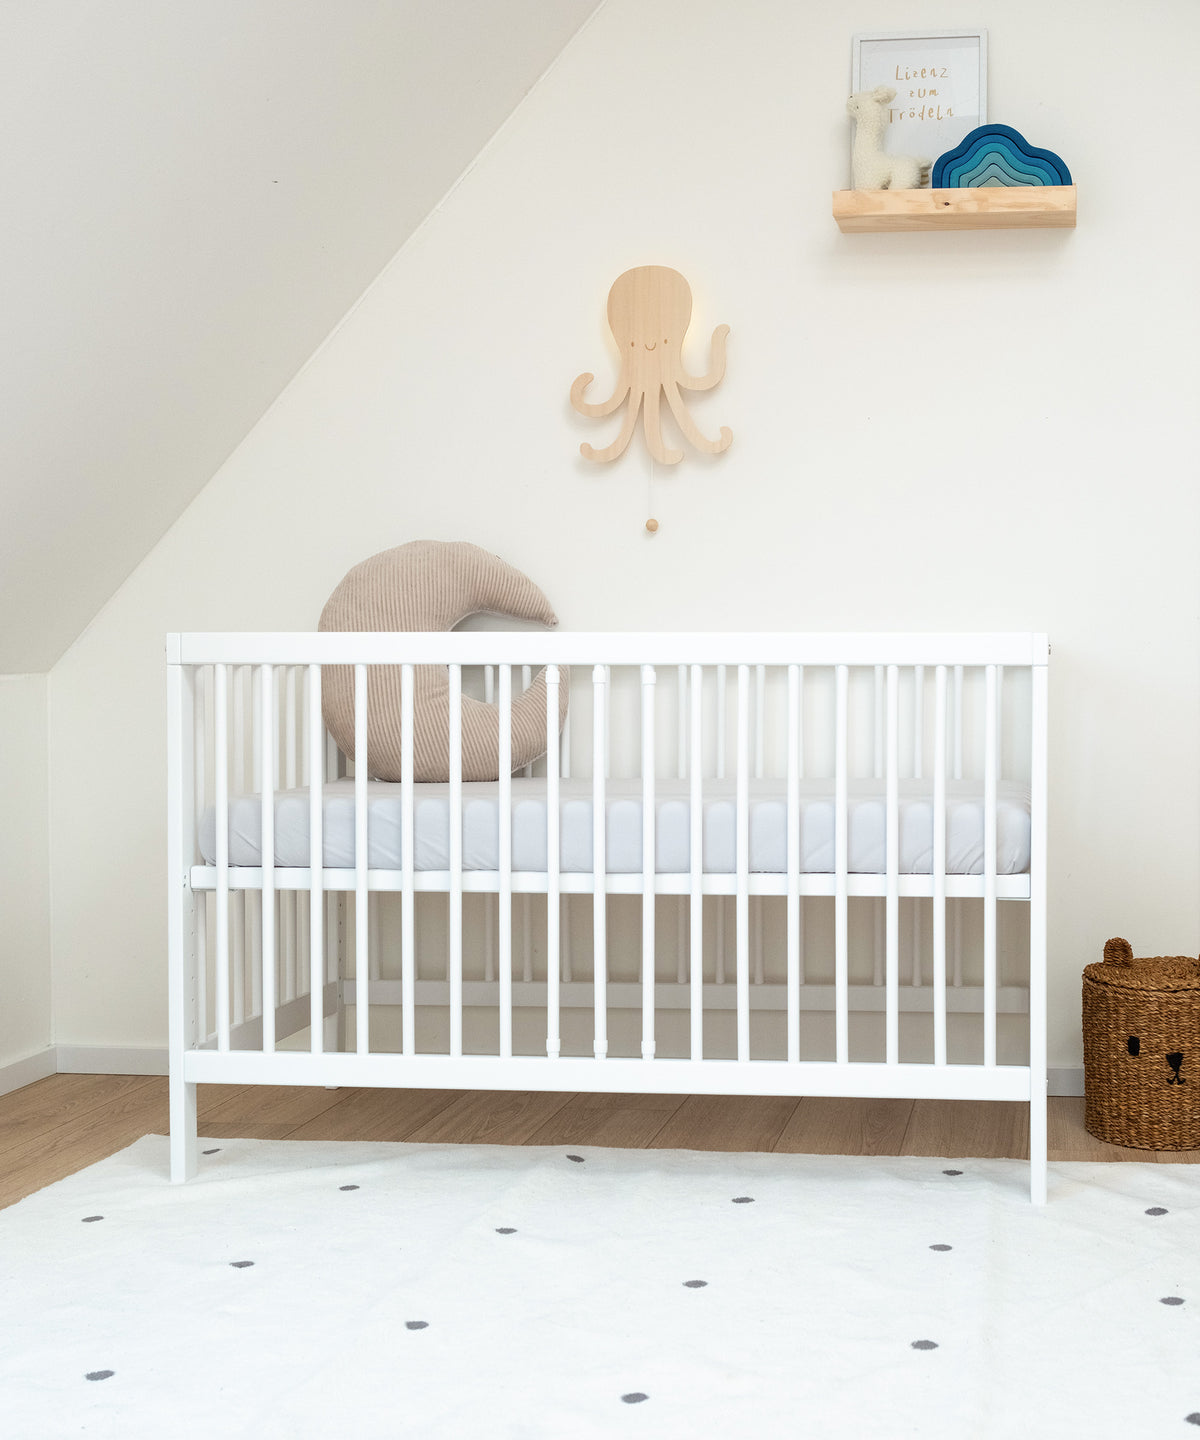 Babybett weiß mit hoch gestellter Liegefläche in Kinderzimmer.